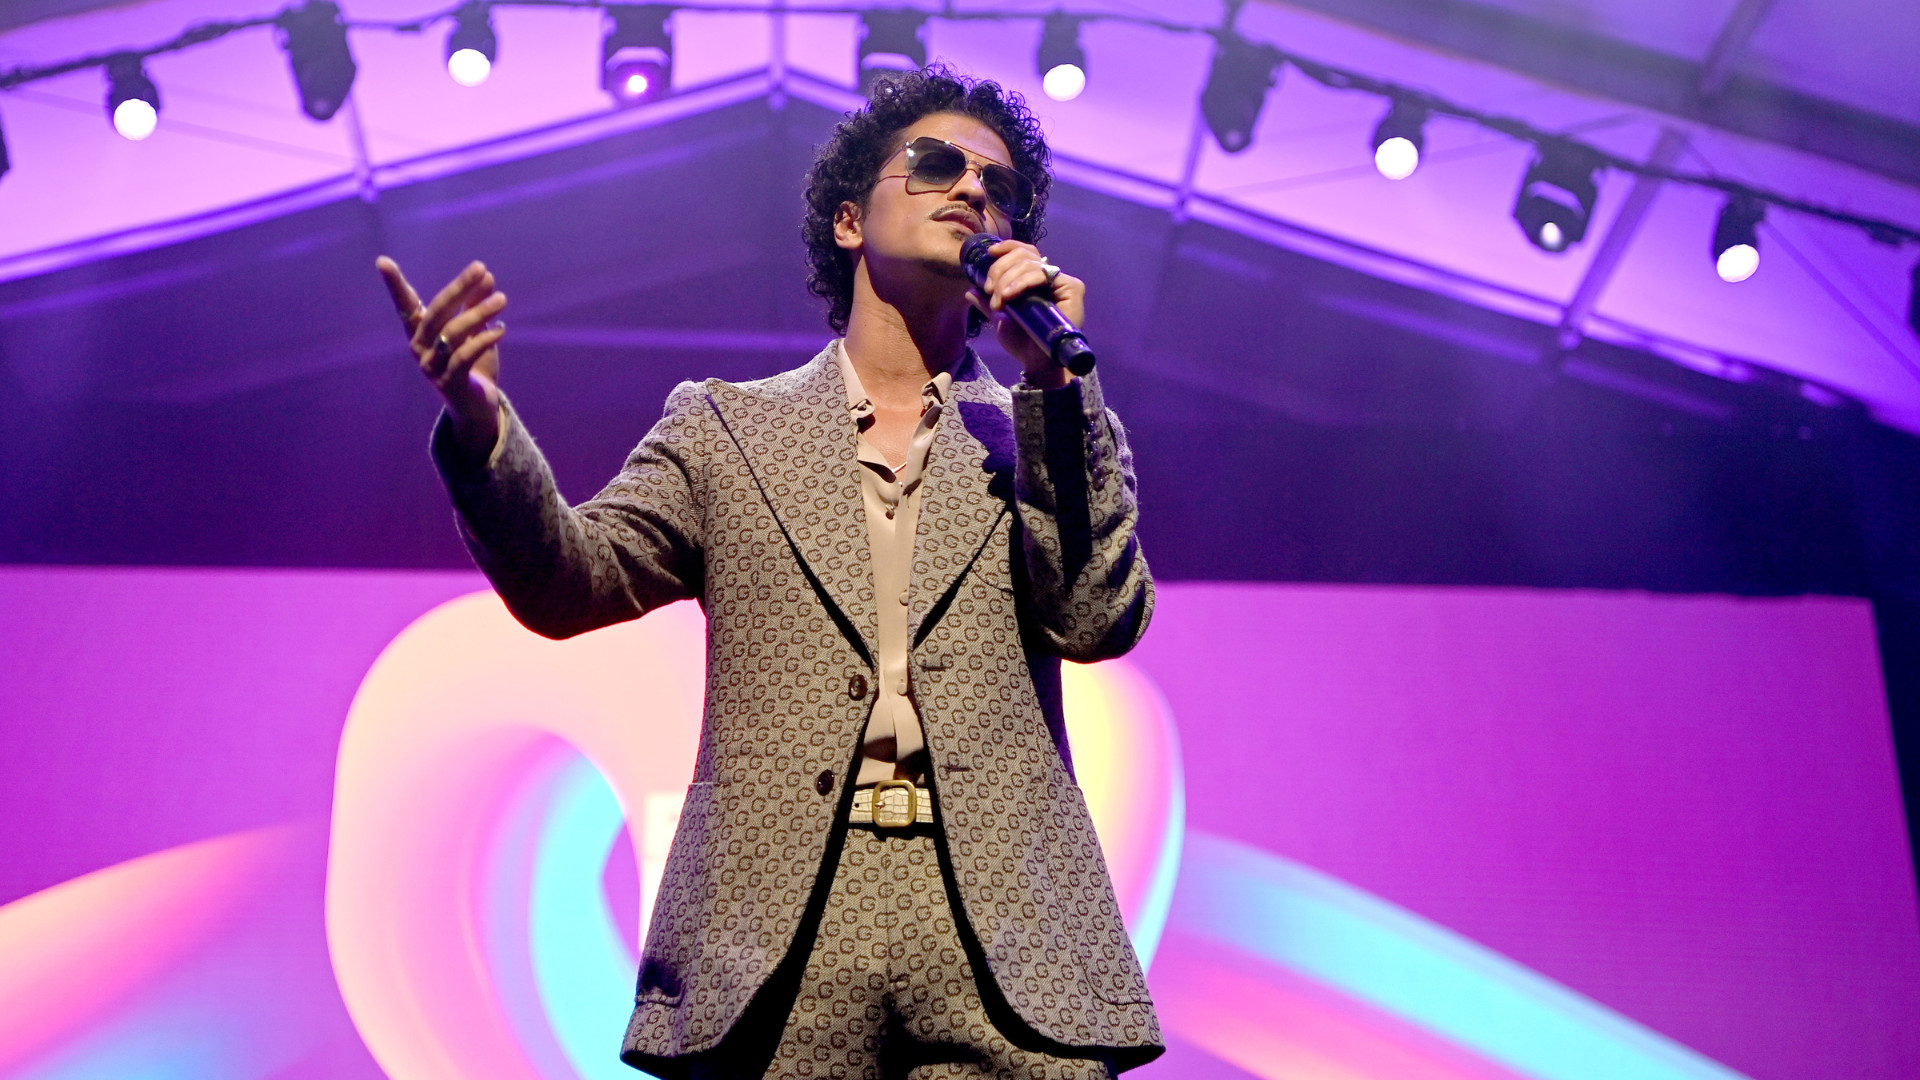 Bruno Mars – giọng ca đình đám thế giới bị cáo buộc nợ hơn 1200 tỷ đồng vì mê trò đỏ đen - ảnh 2